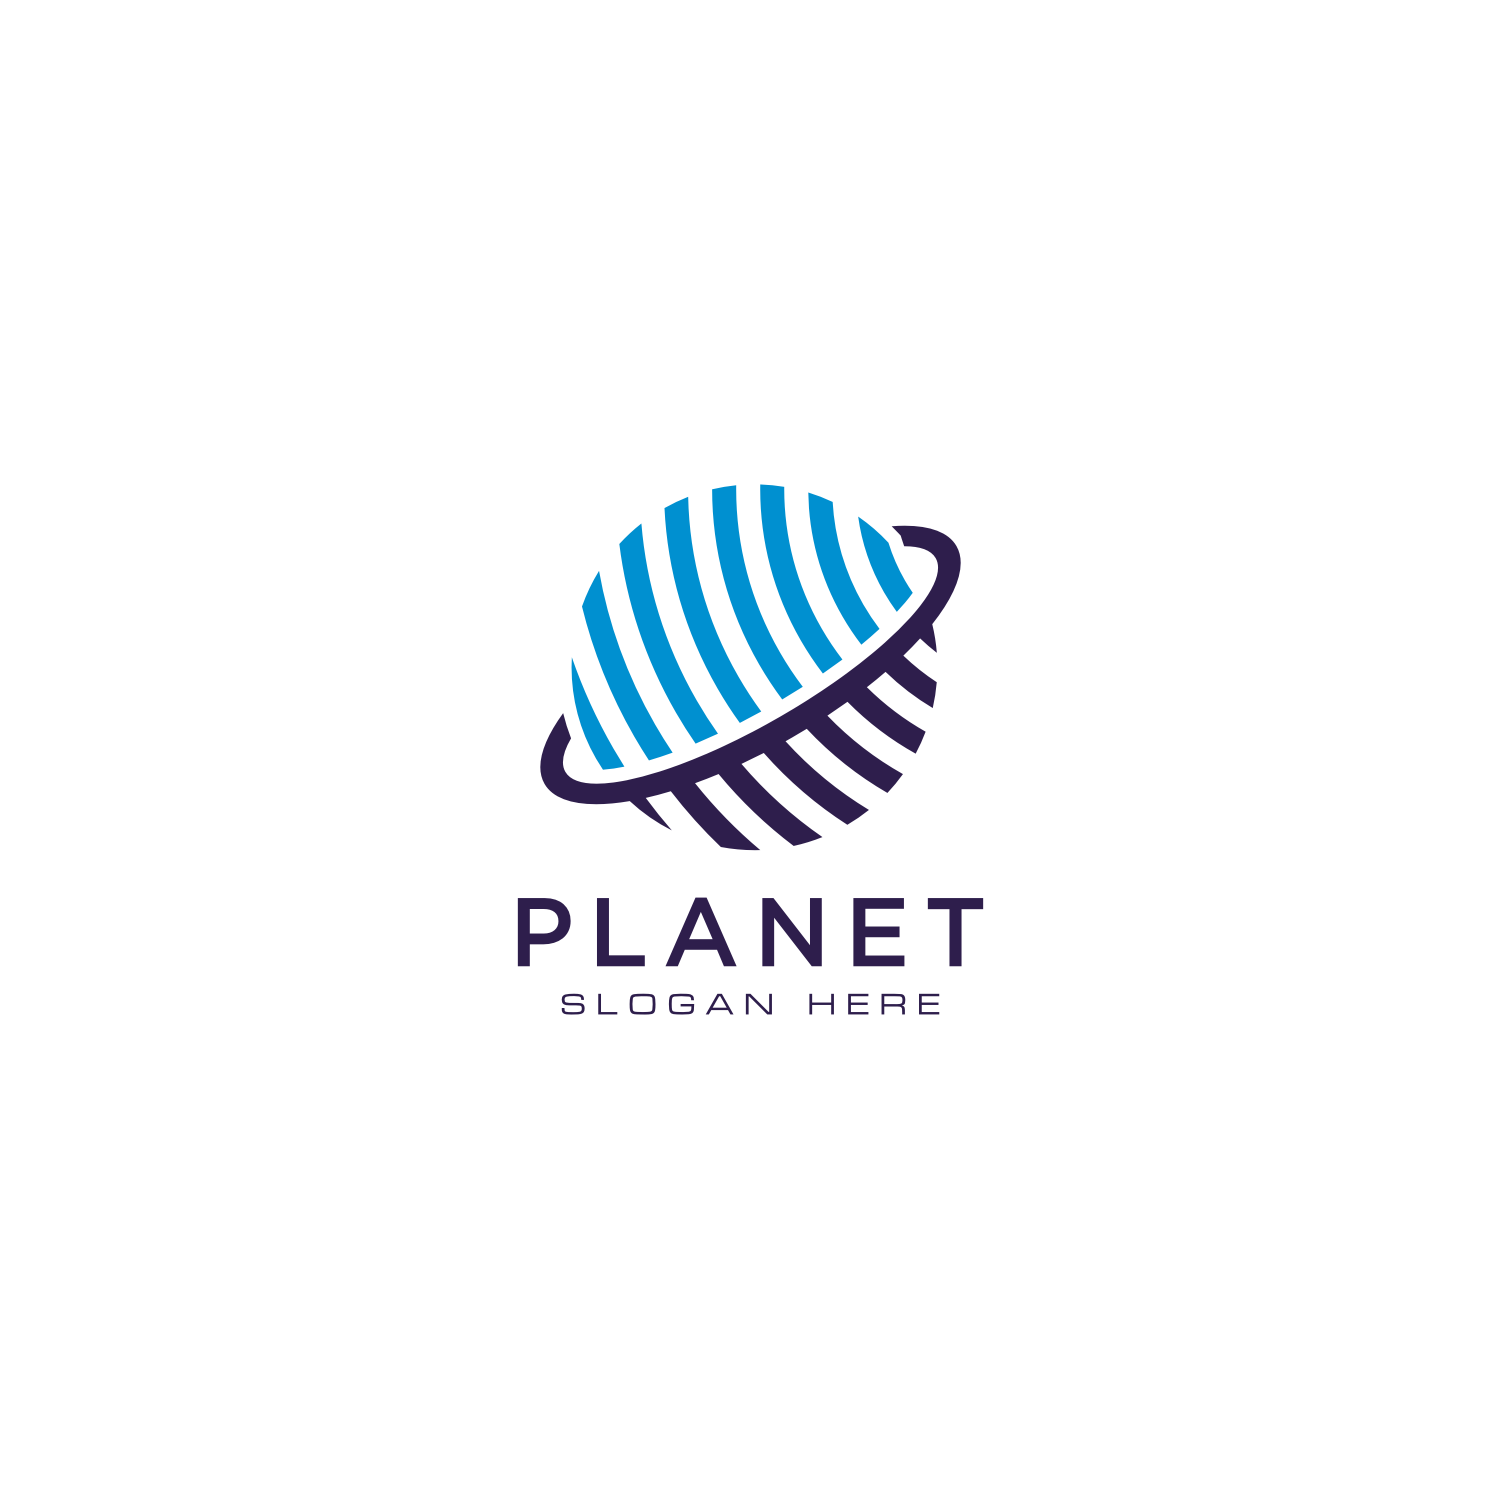 Creative Planet Orbit Abstract Logo Design previews.